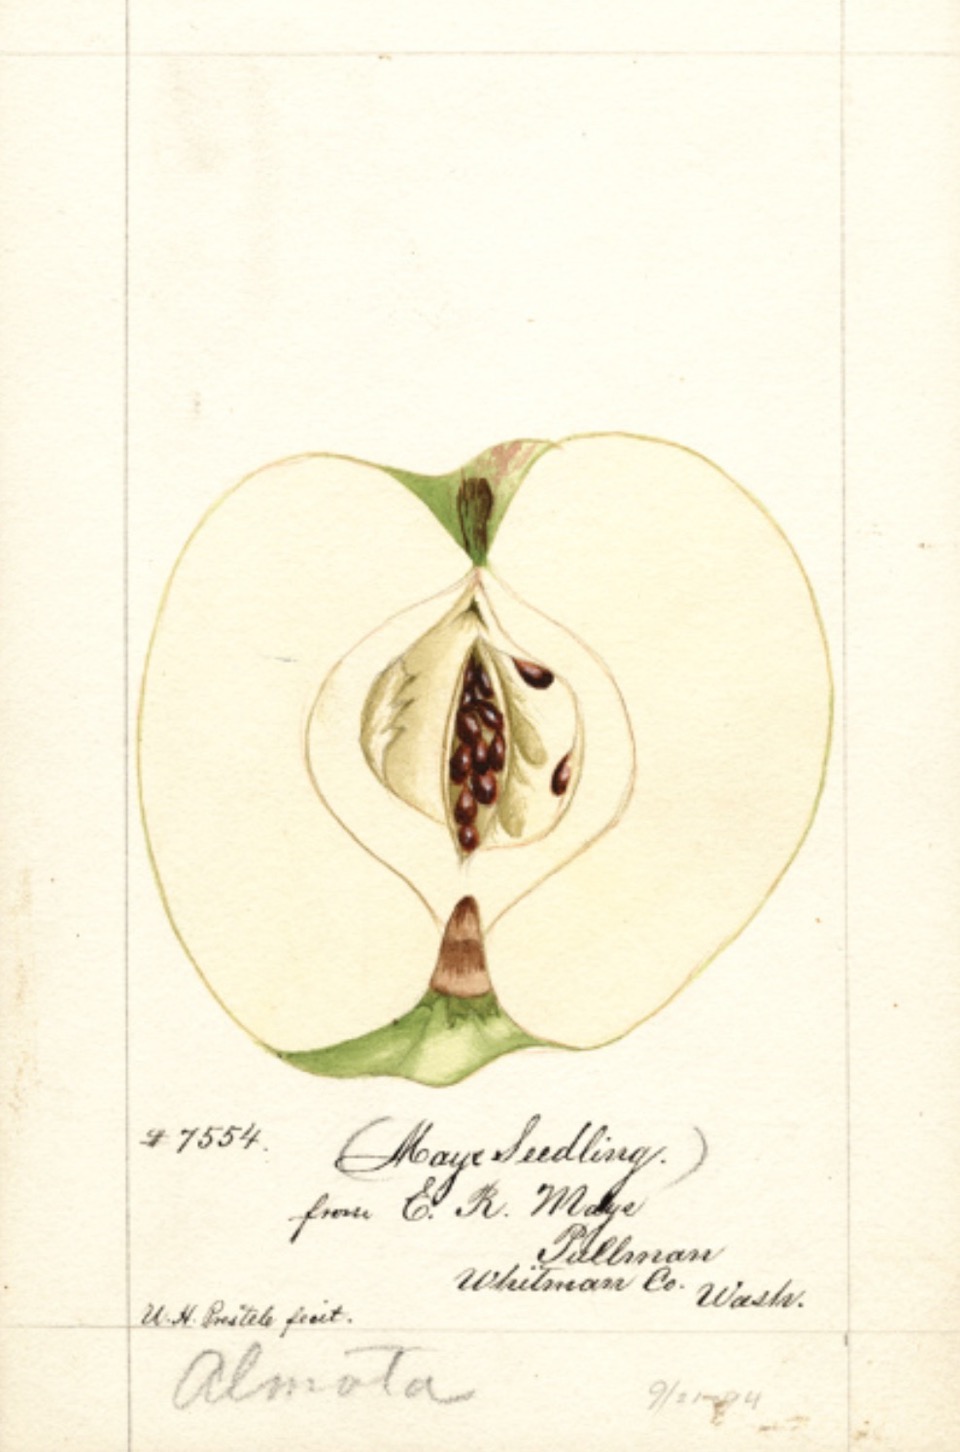 Historische Abbildung eines aufgeschnittenen Apfels; USDA